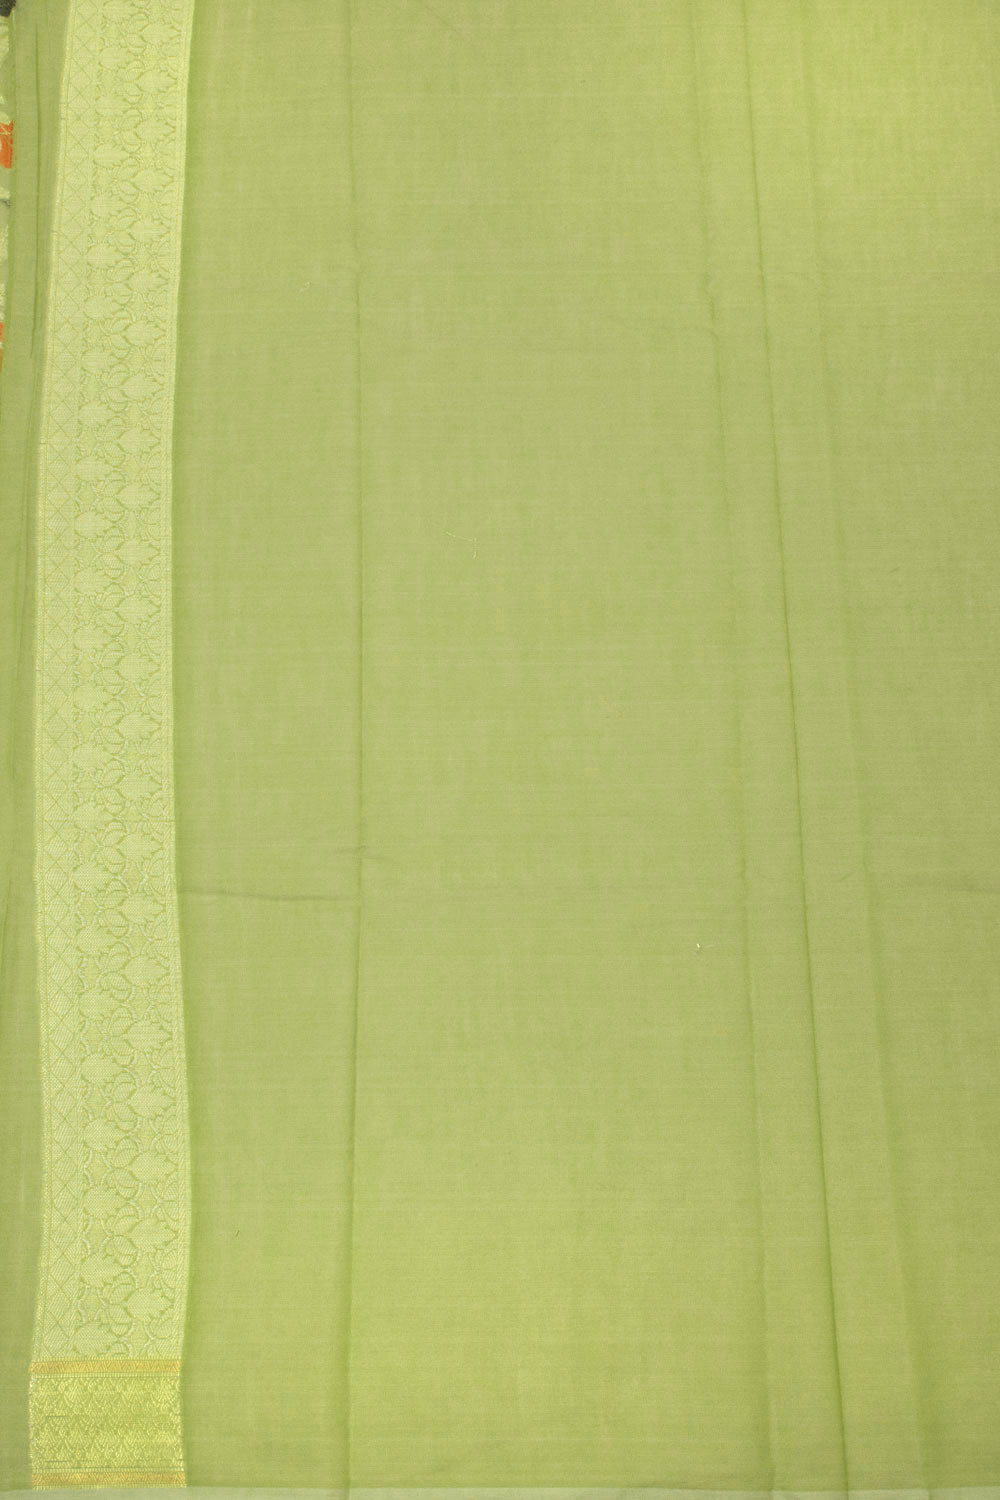 Lime Green Handloom Banarasi Cotton Saree - Avishya